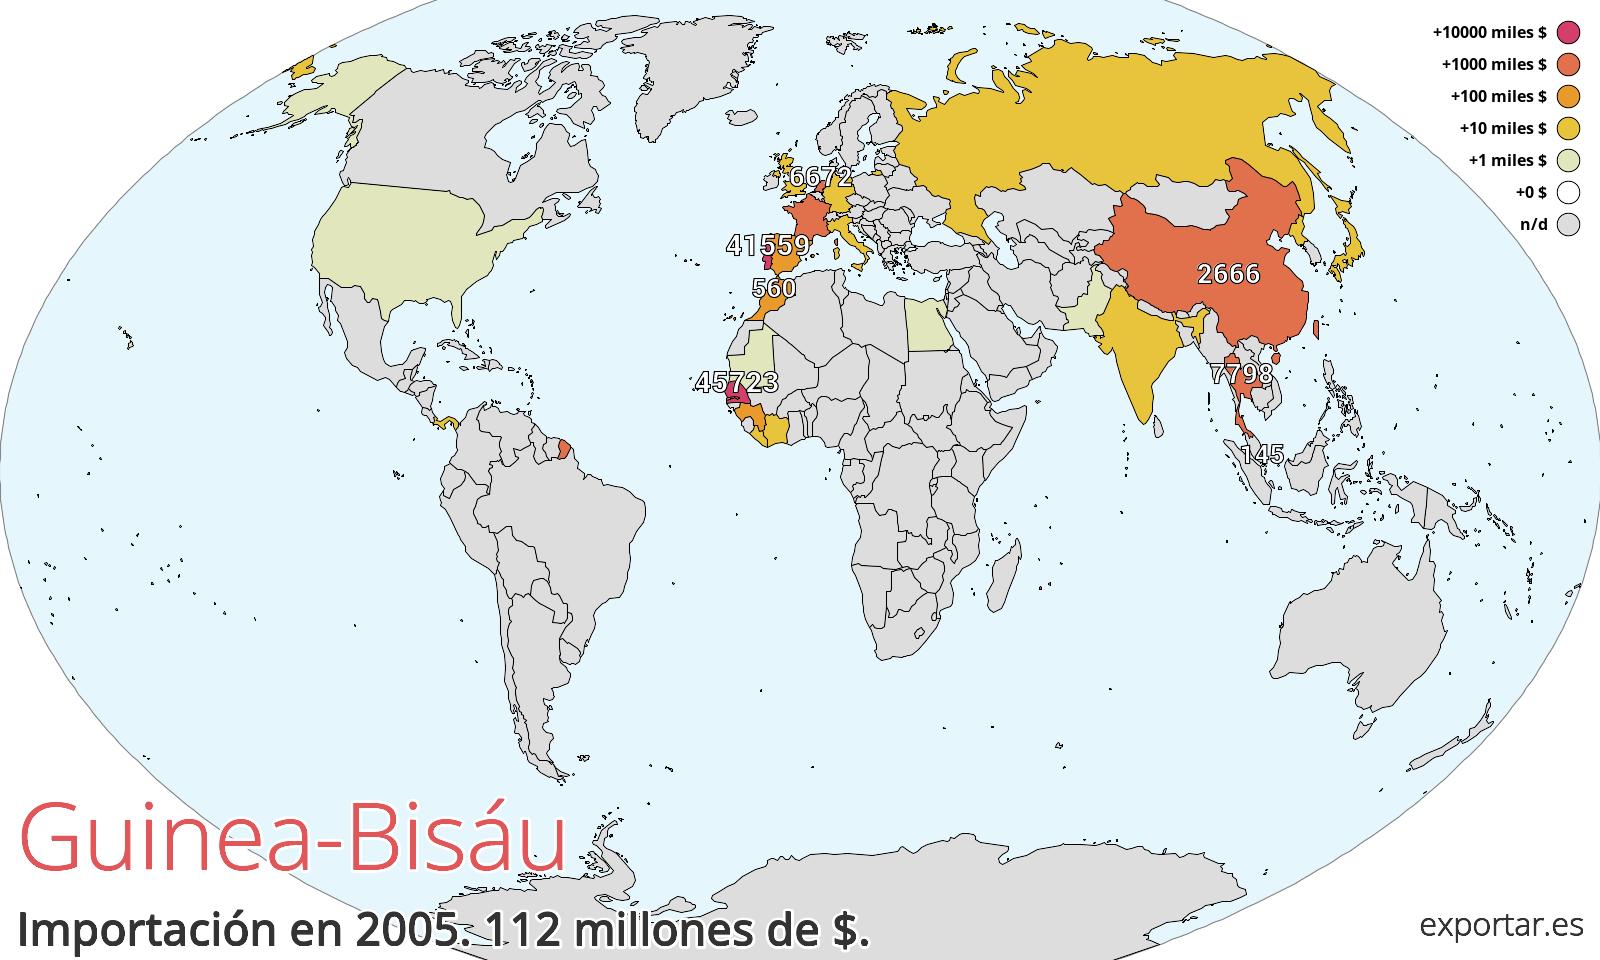 Mapa de importación de Guinea-Bisáu en 2005.